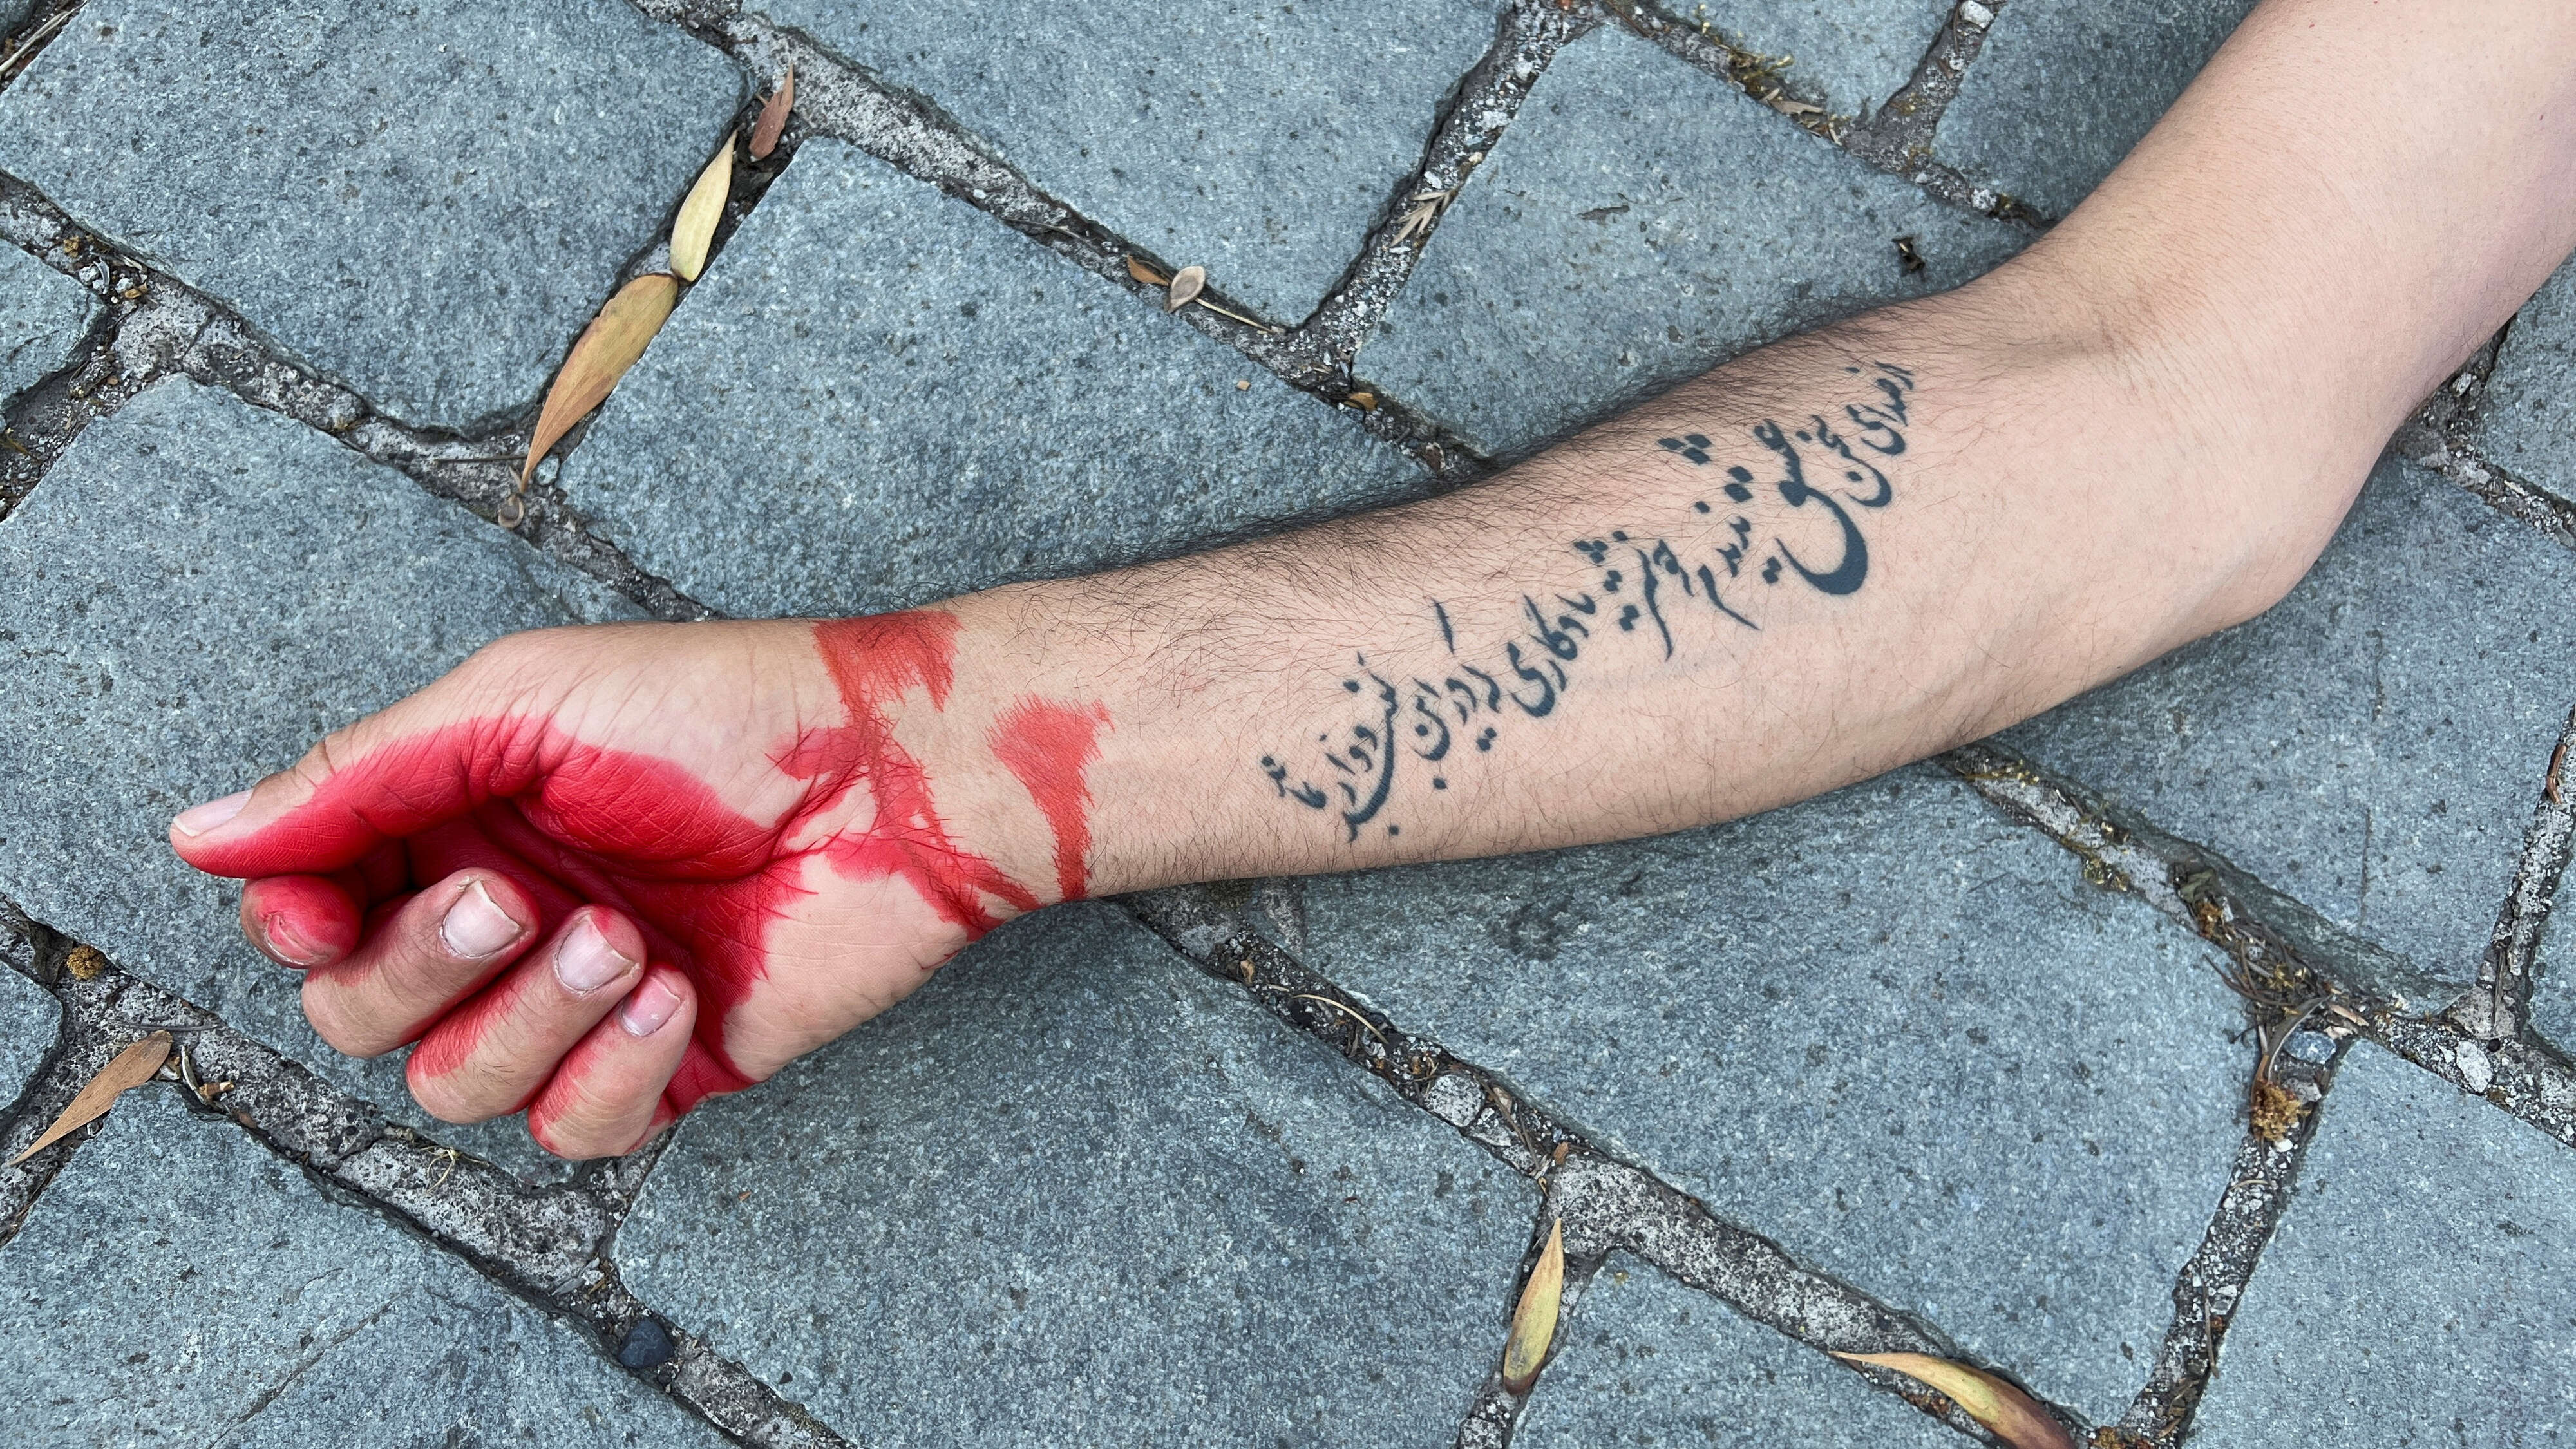 الشعب الايراني يسكب الدماء لاقتلاع حريته